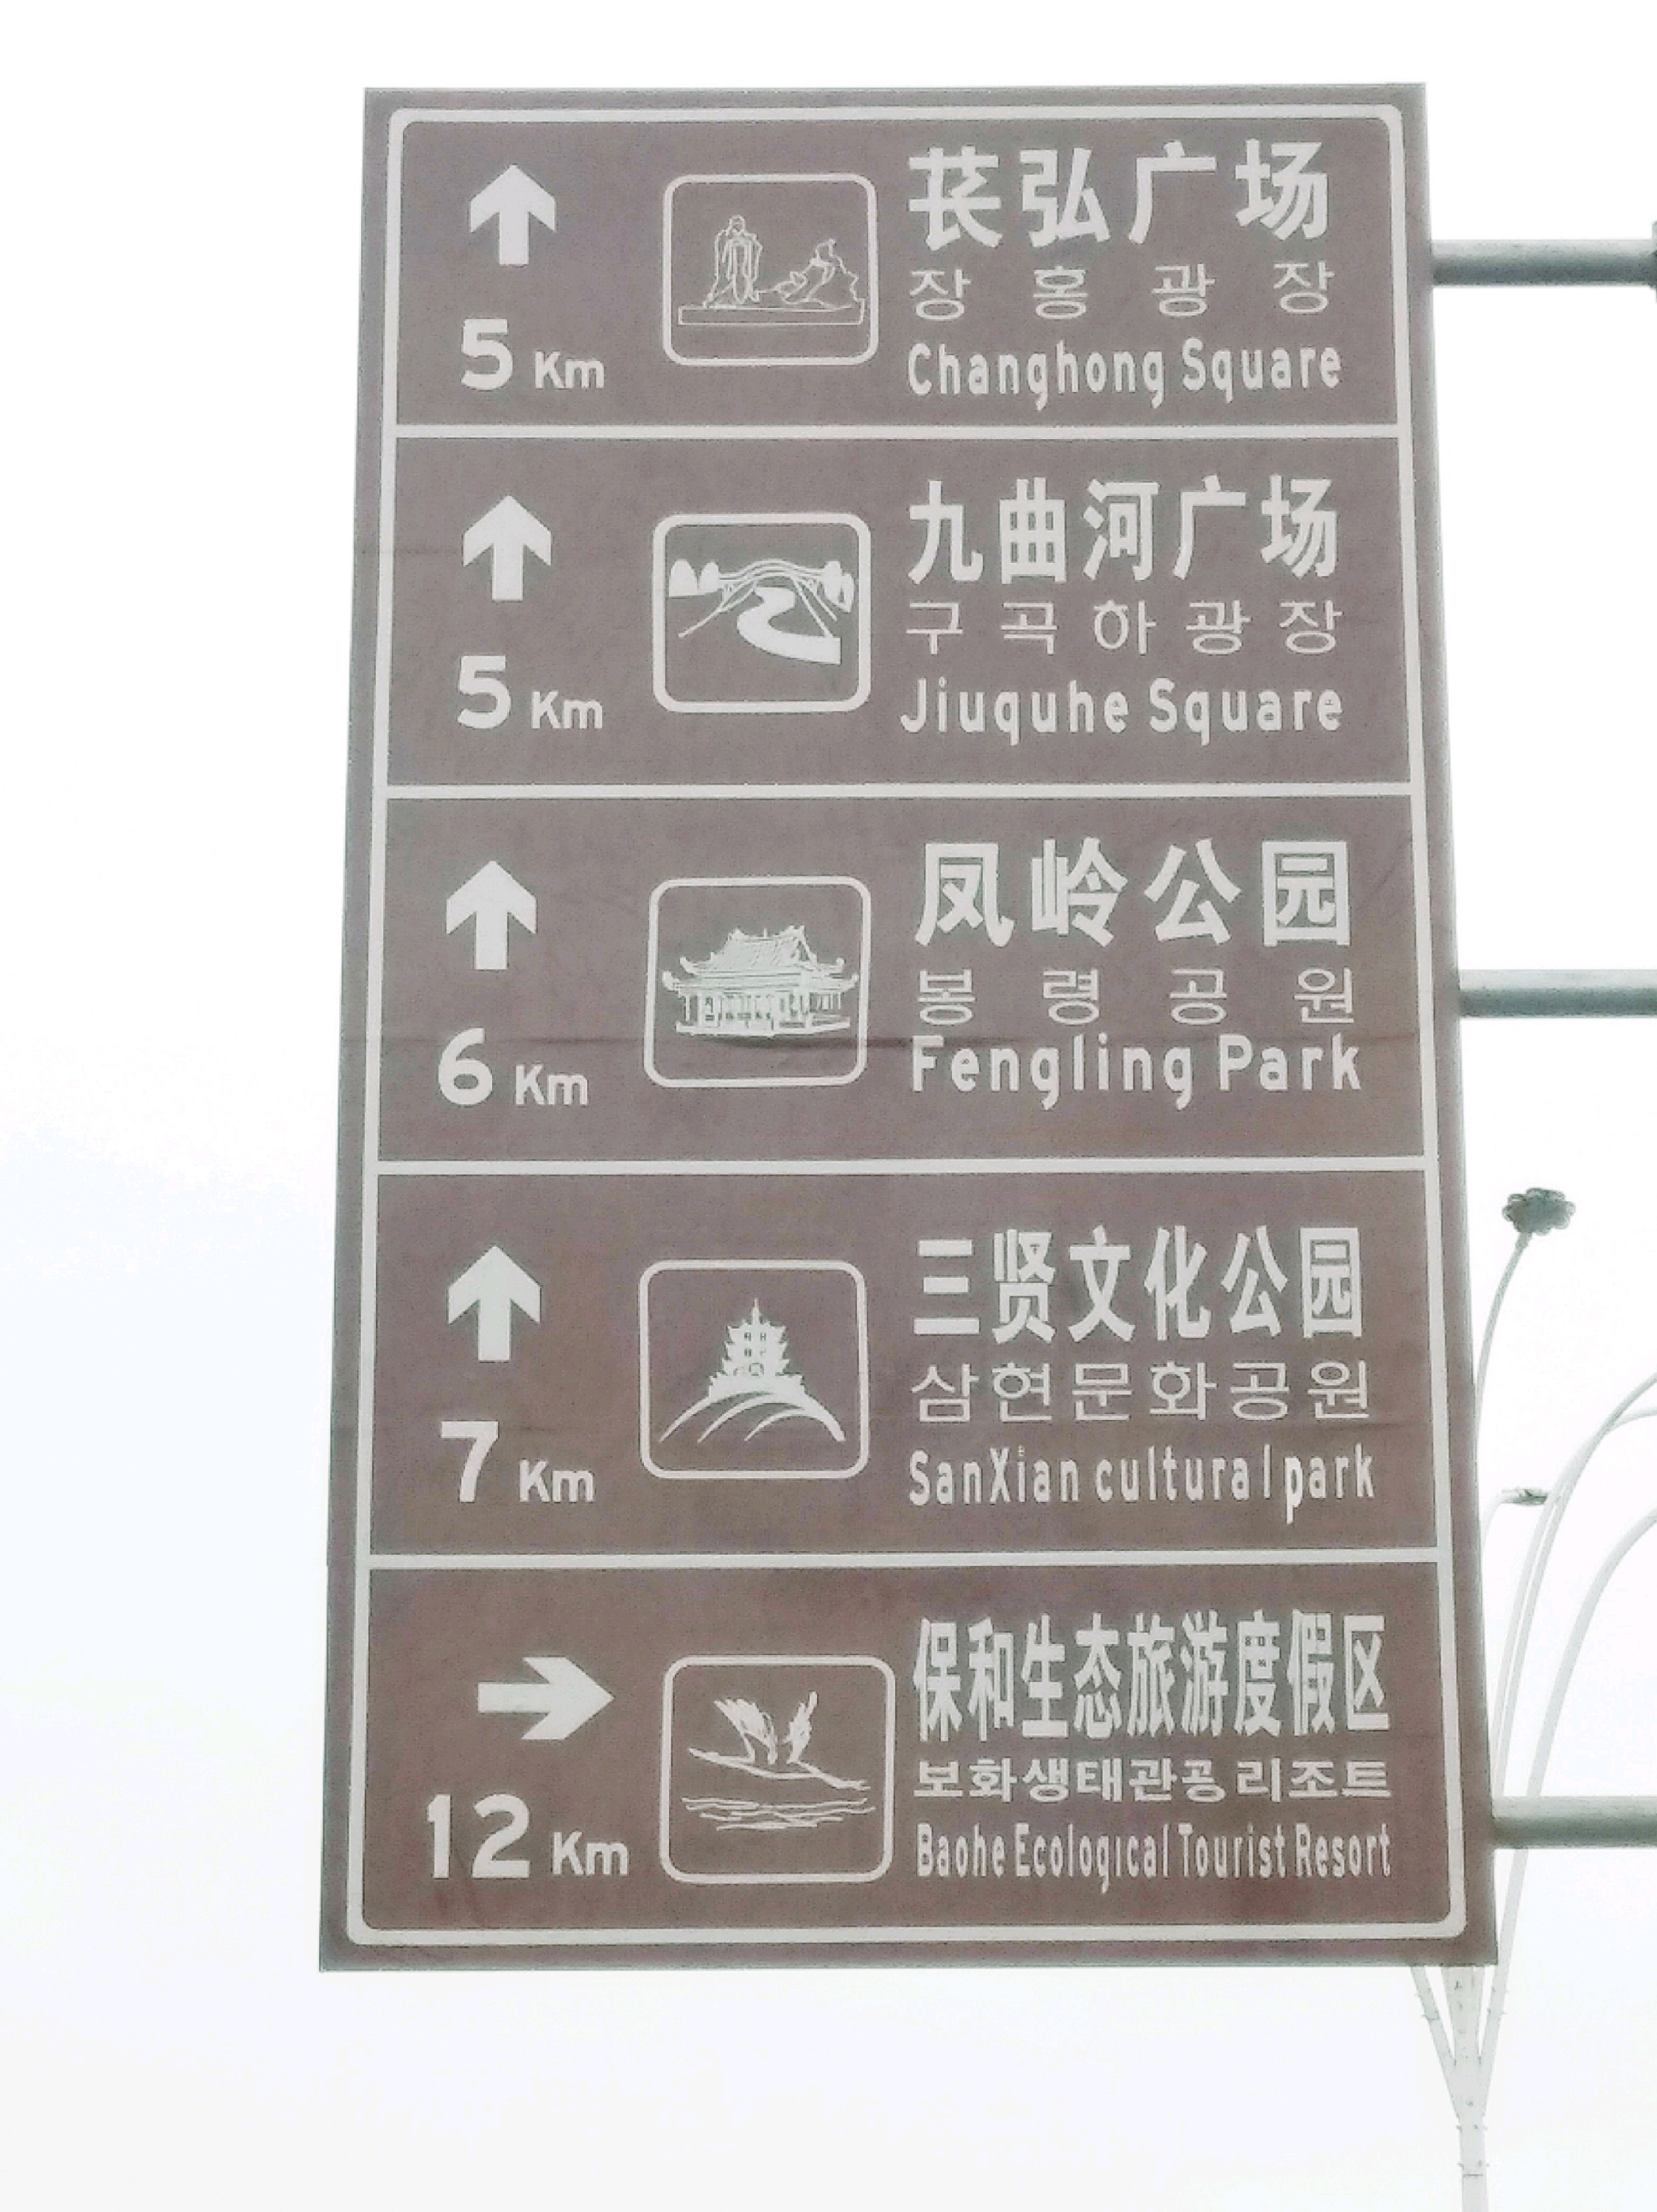 资阳字库山公园，是一个健身主题公园。风景优美。而且免费。